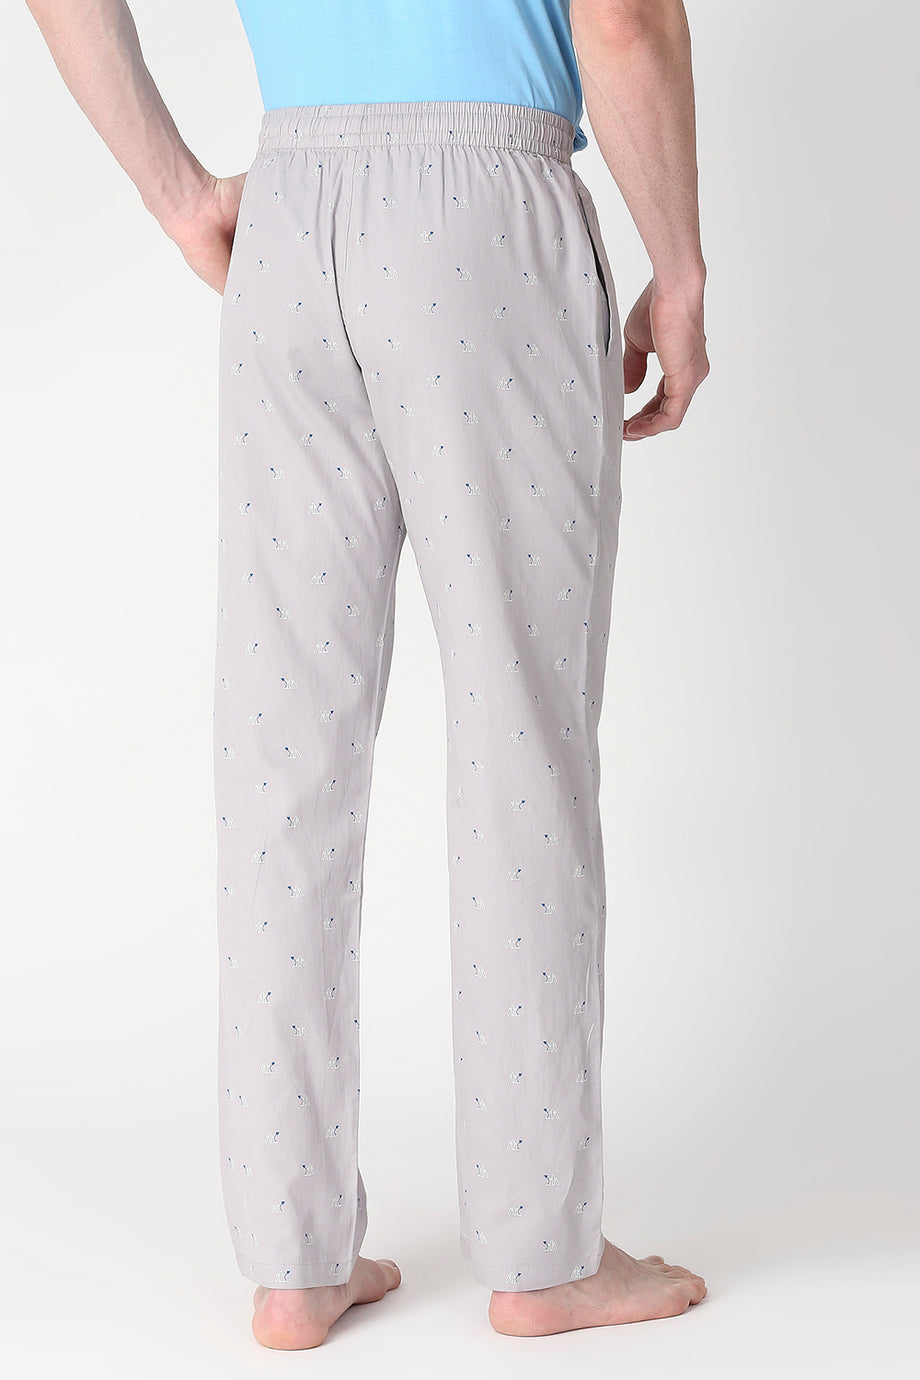 Buy Pyjamas for Men Online in India